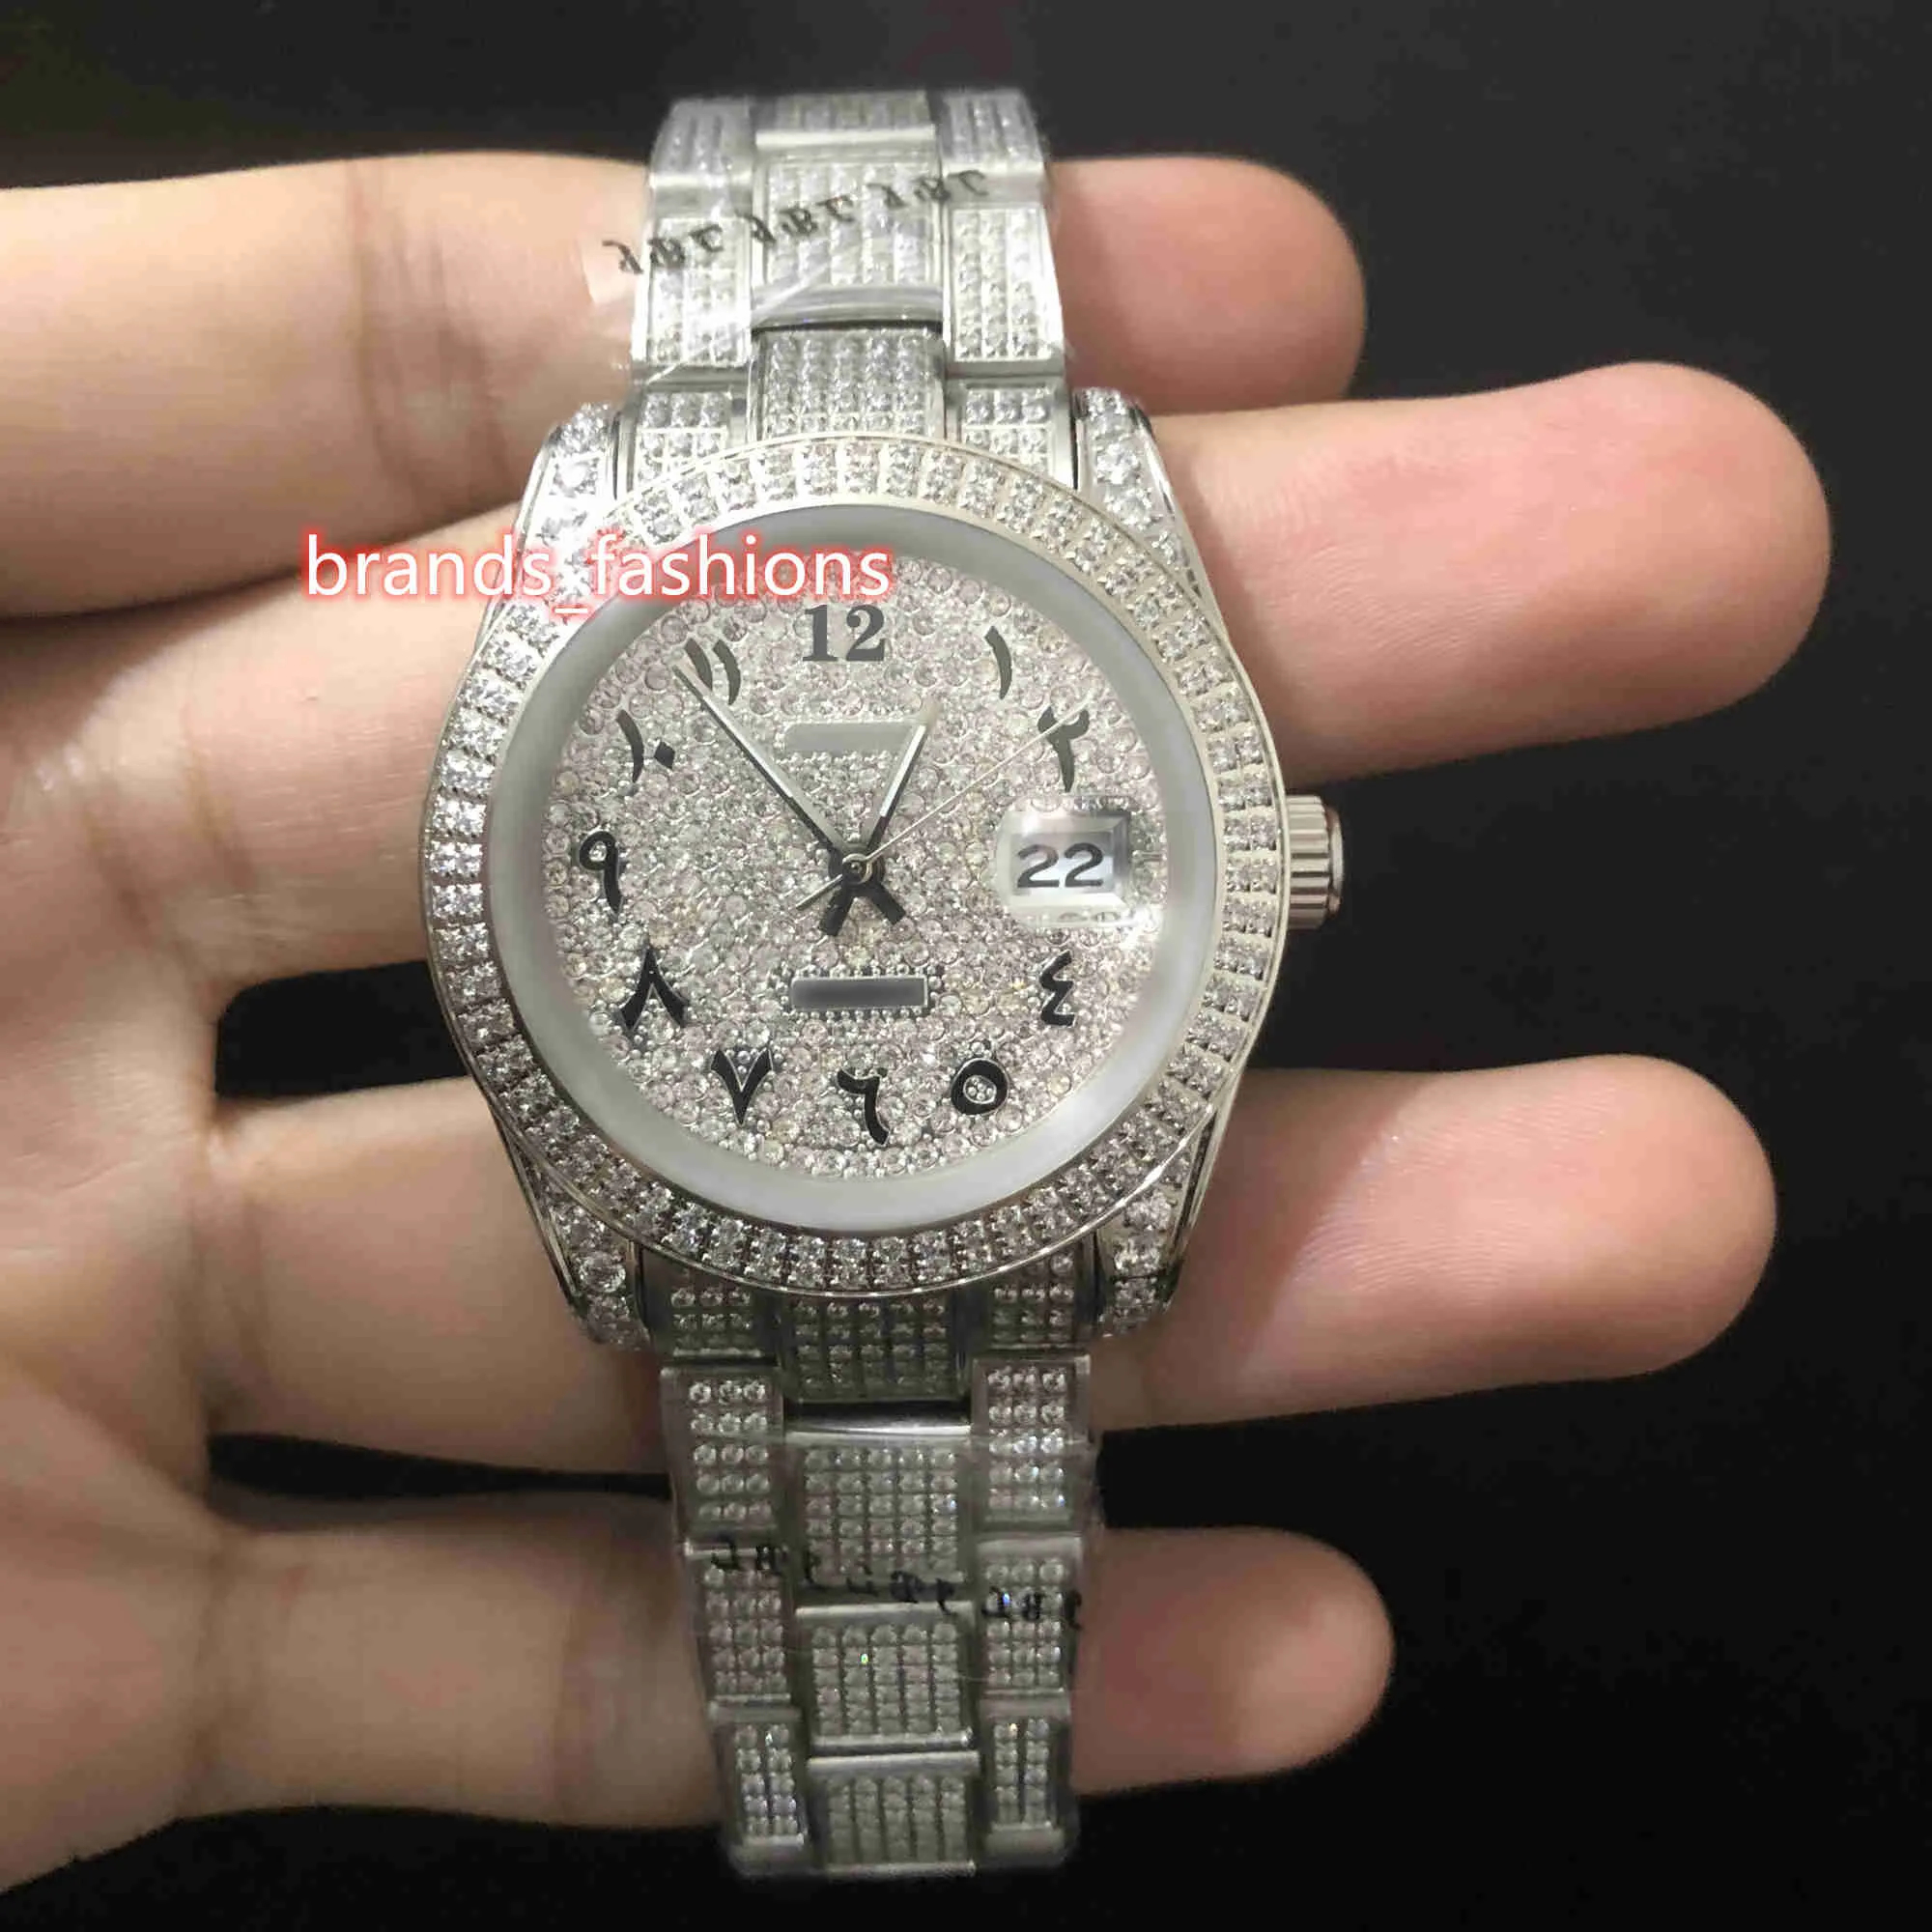 새로운 남자 아이스 아이디어 다이아몬드 손목 시계 아랍어 디지털 스케일 시계 실버 스테인리스 스틸 케이스 다이아몬드 스트랩 자동 기계식 시계